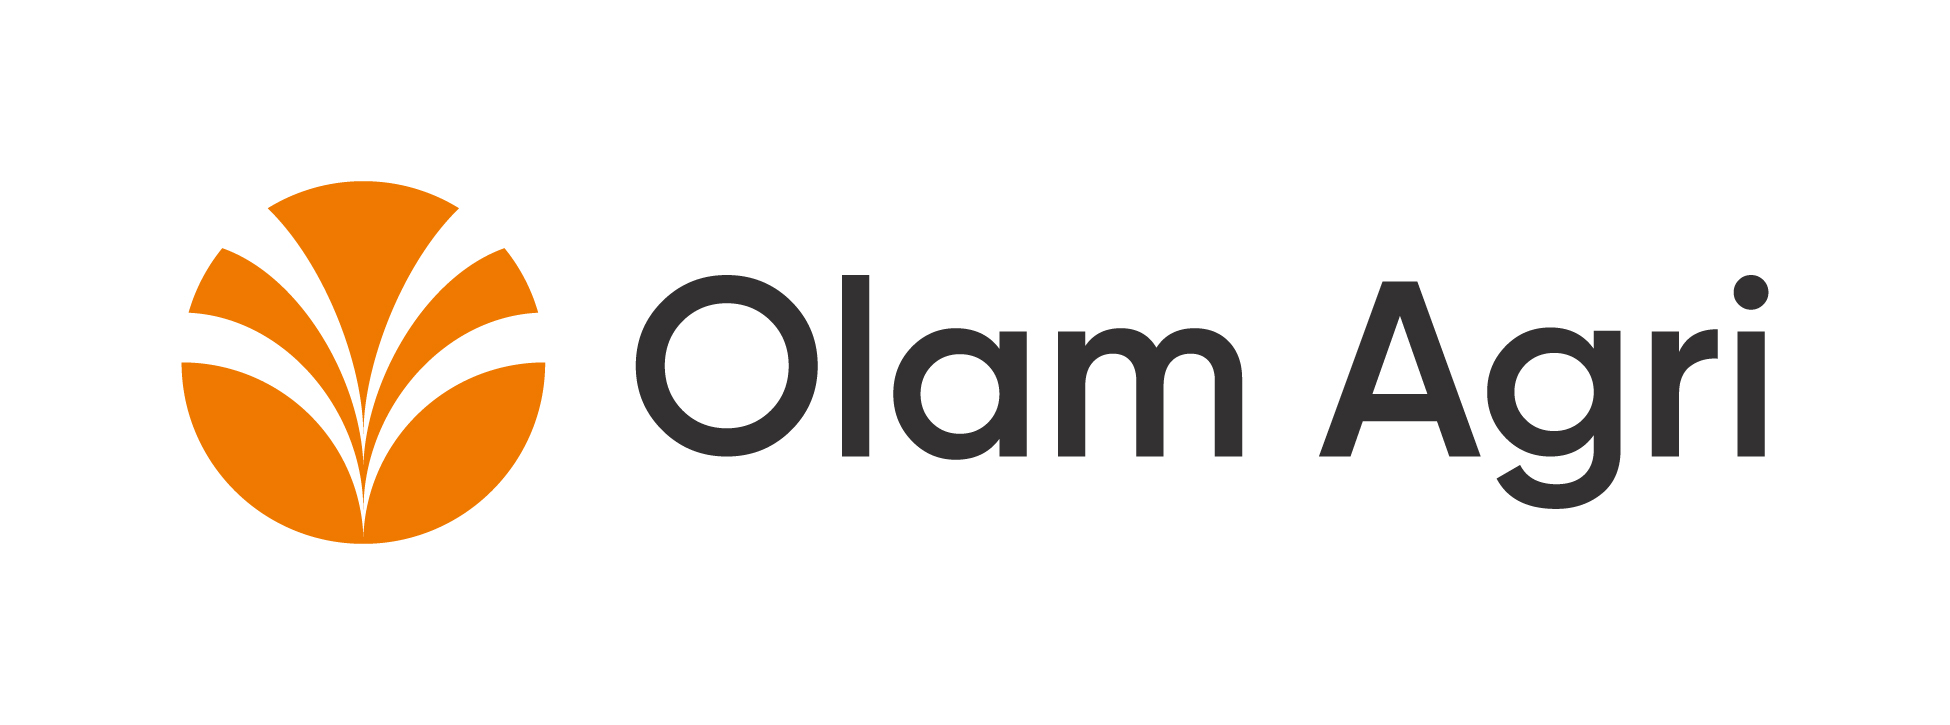 Olam Agri Logo-01